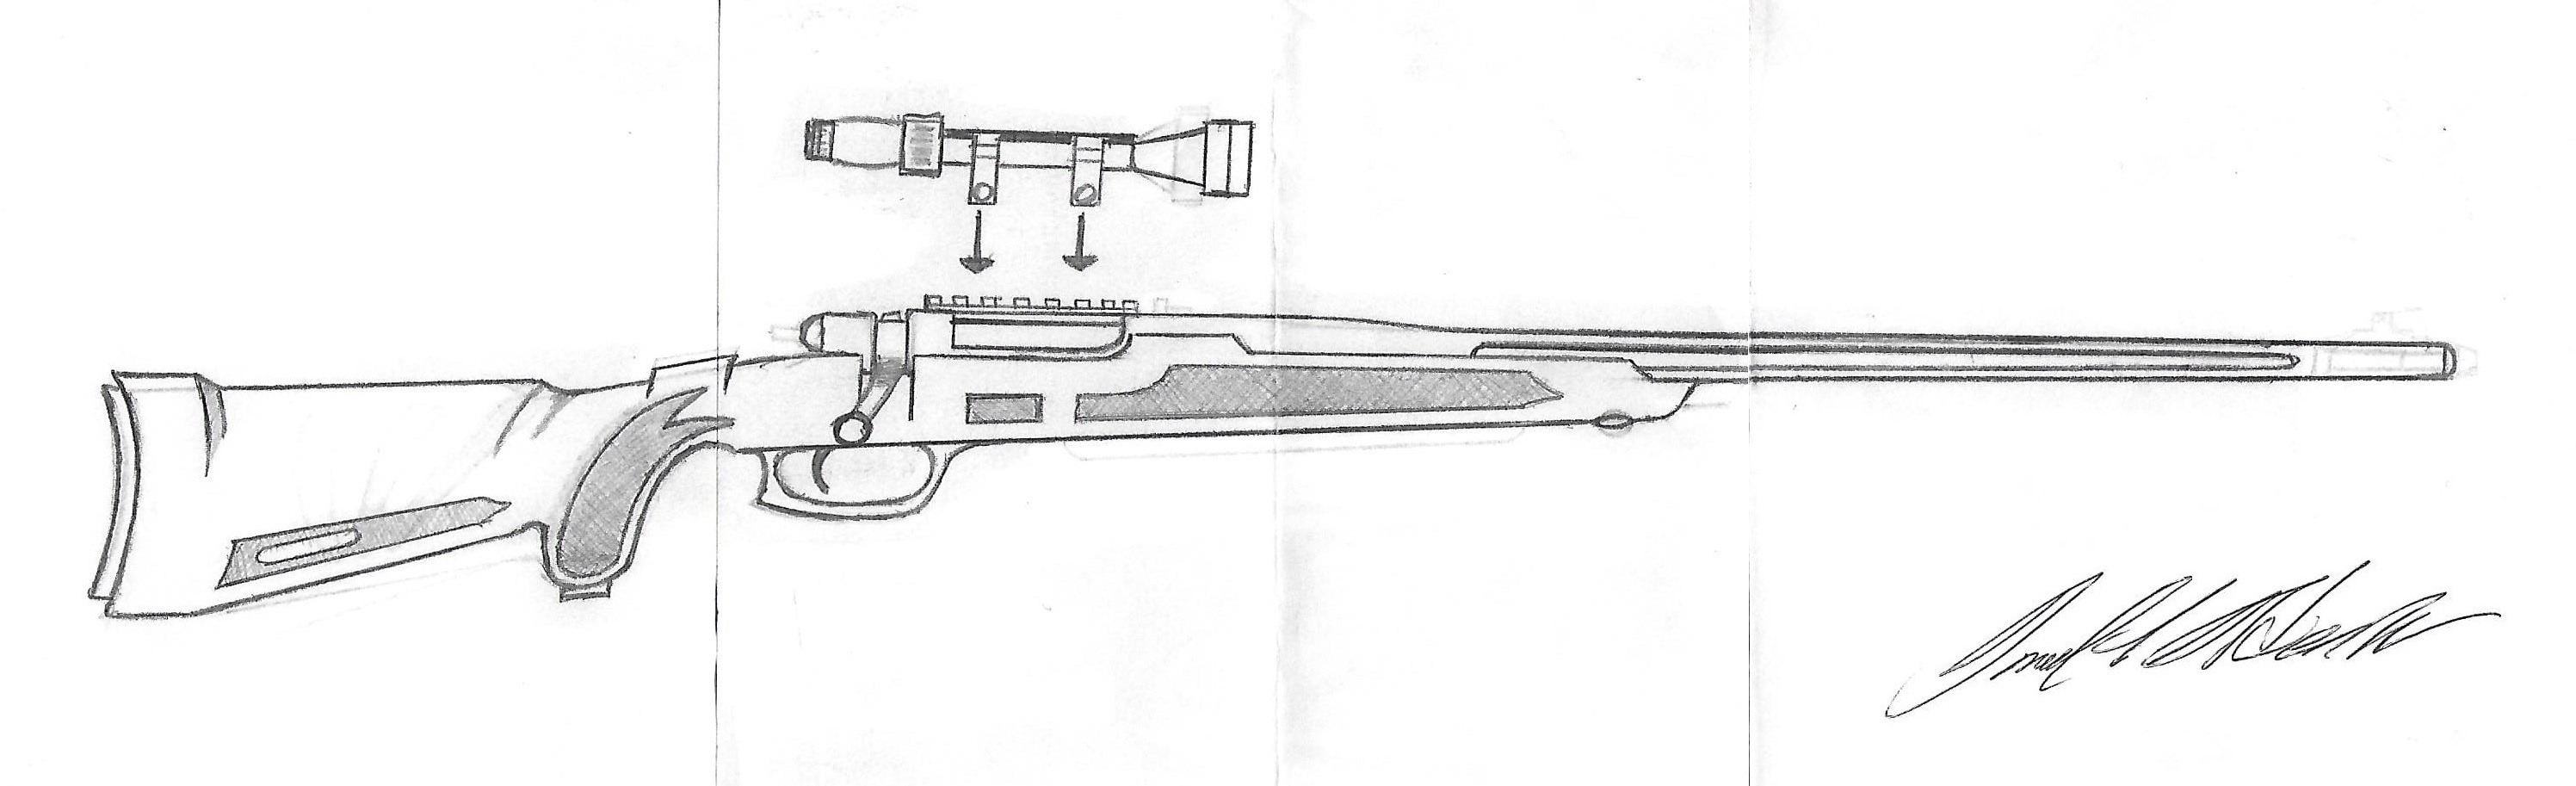 чертеж awp снайперской винтовки для дерева фото 94